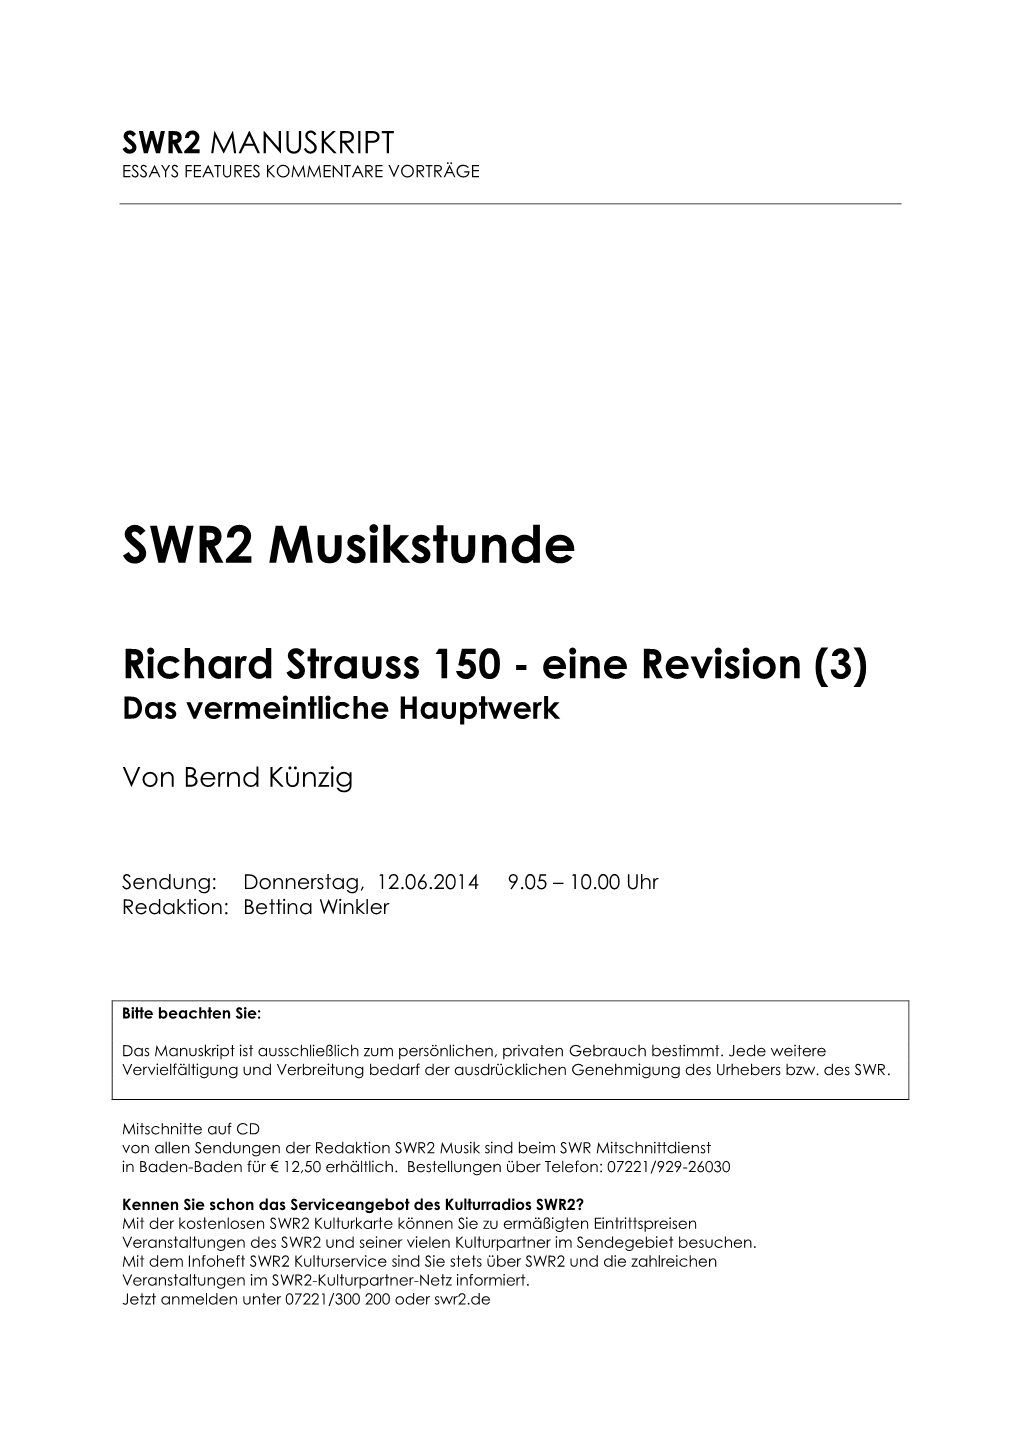 SWR2 Musikstunde Richard Strauss